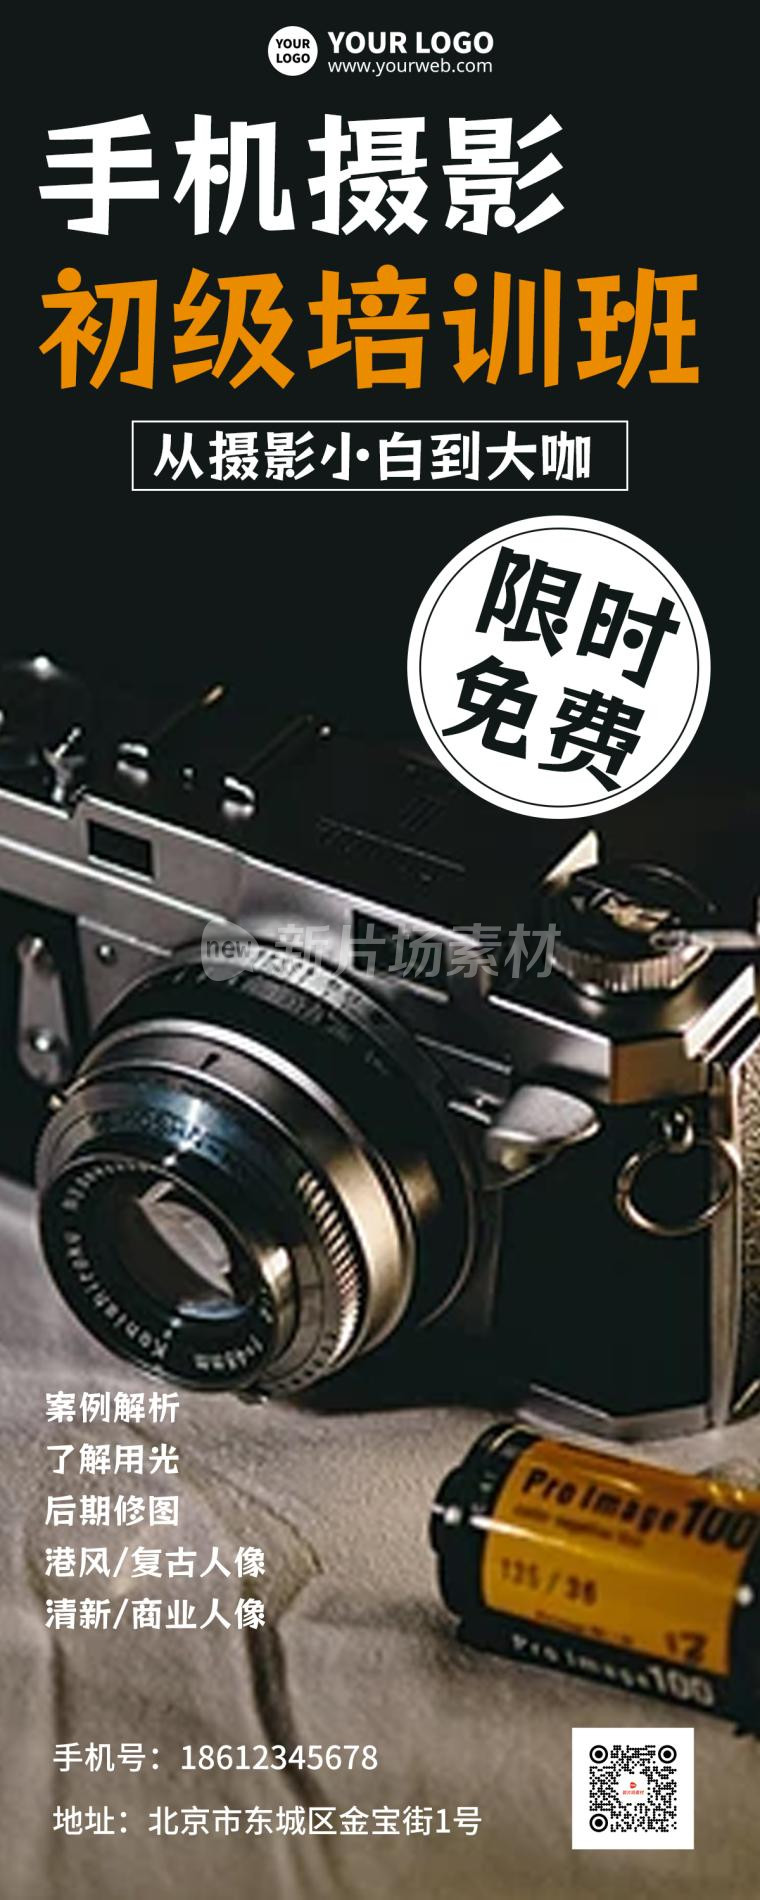 手机摄影培训班招生宣传简约海报长图